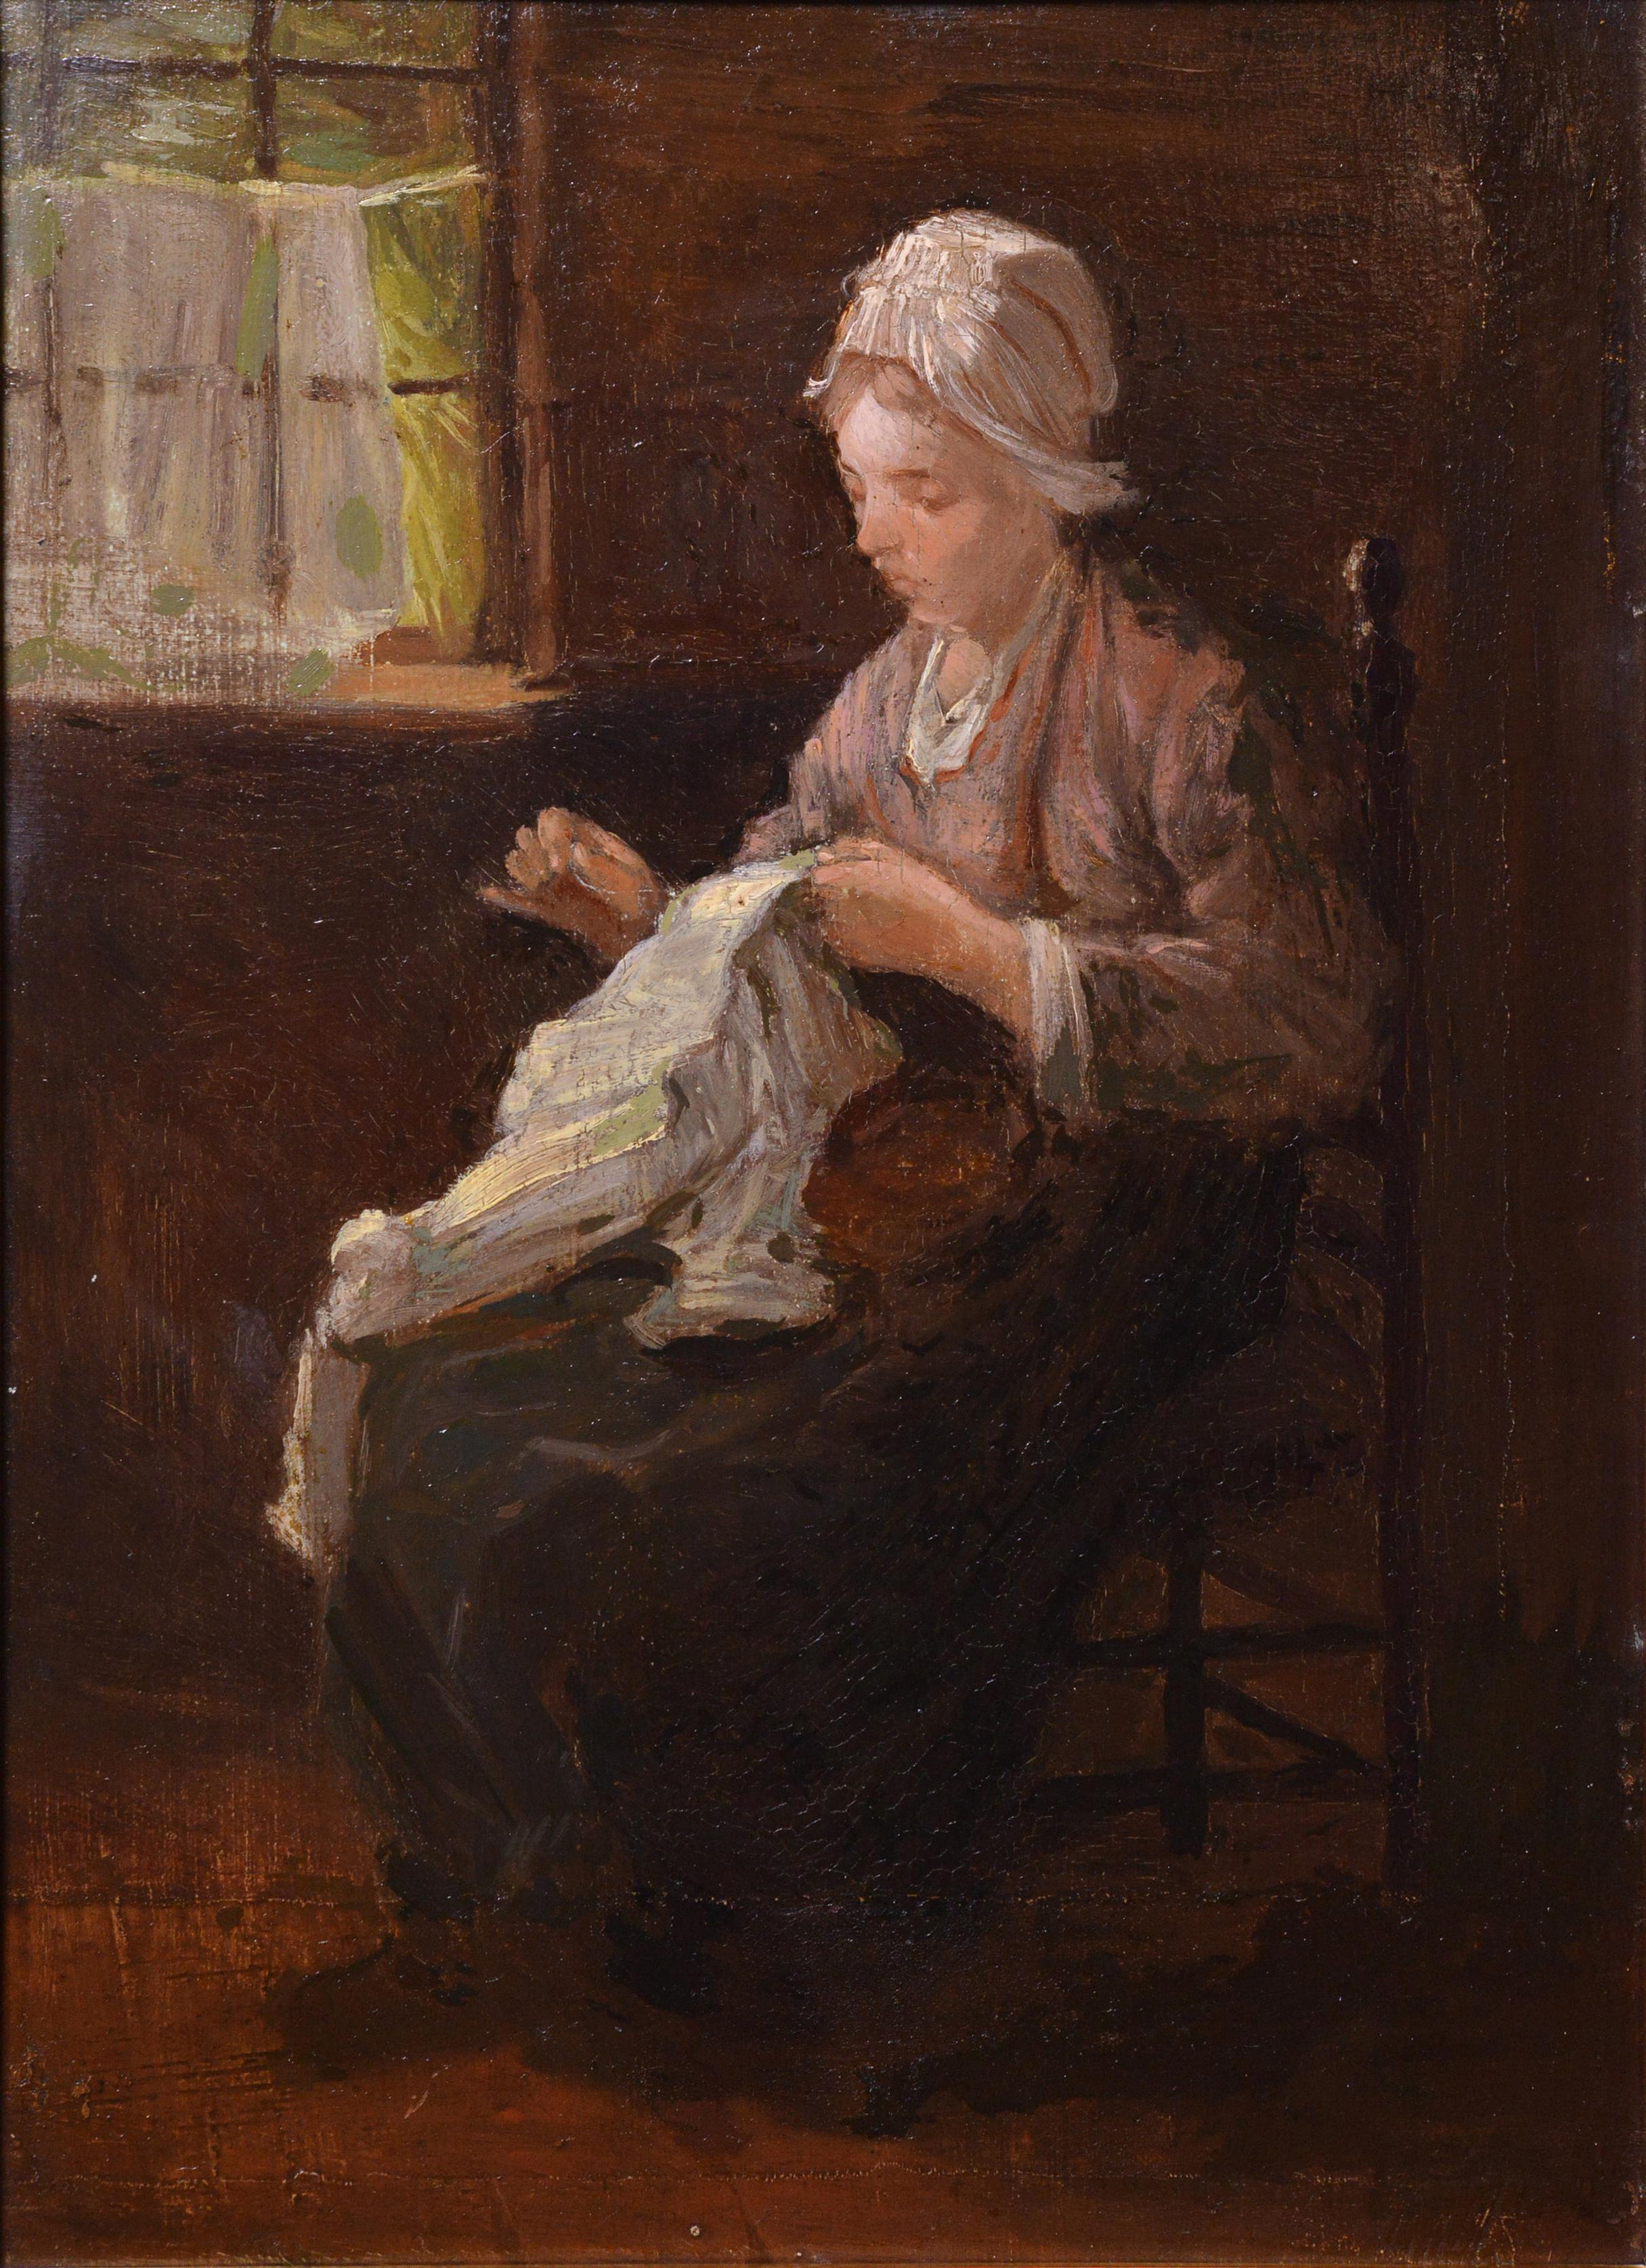 Niederländische Interieur-Szene Bauern Mädchen nähen, 19. Jahrhundert, Ölgemälde (Niederländische Schule), Painting, von Israëls, Jozef